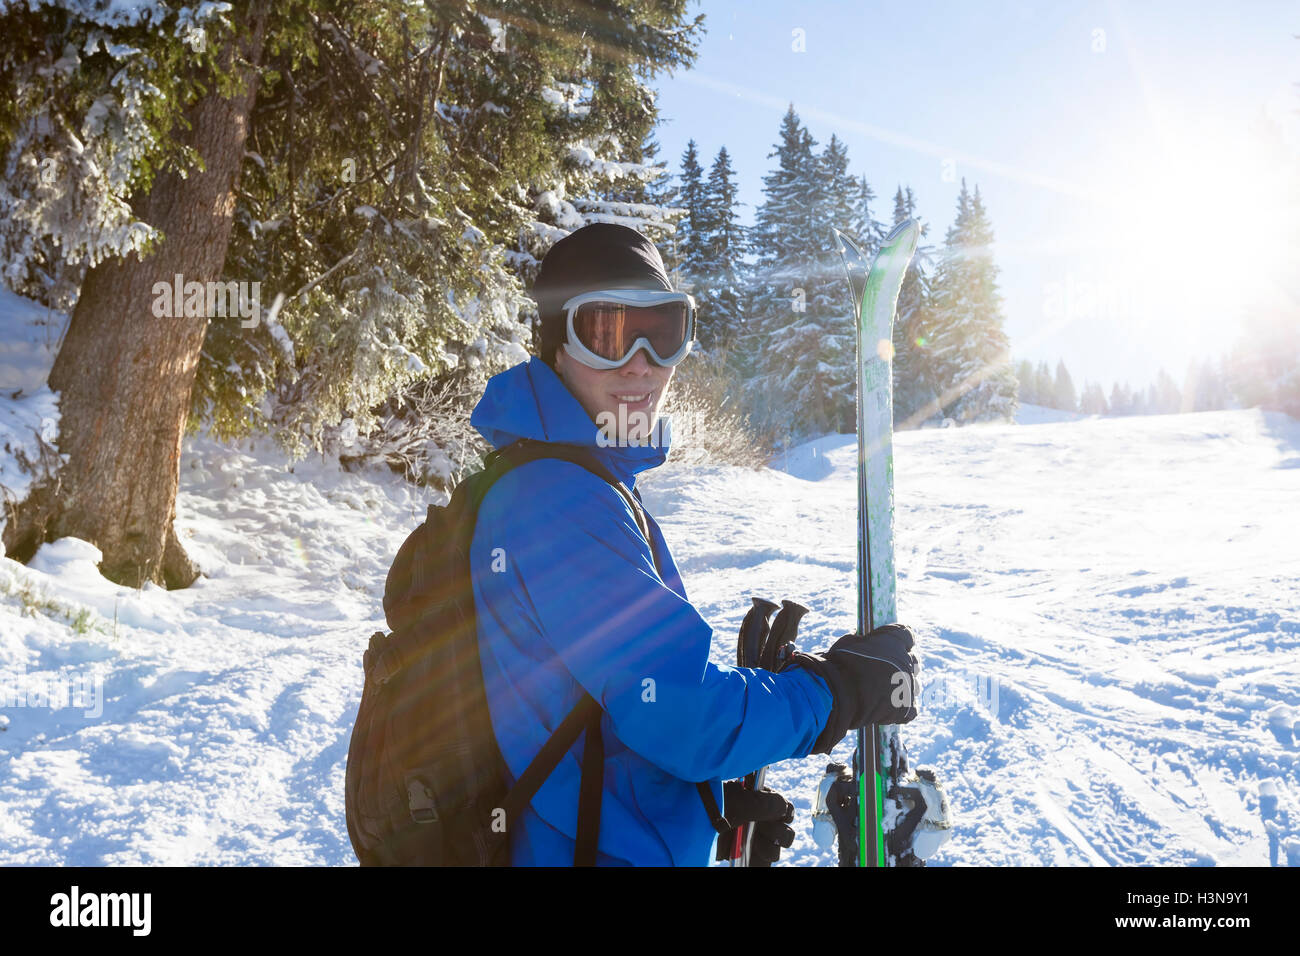 Esquiador sonriente parado cerca del bosque con esquí en mano, día soleado Foto de stock